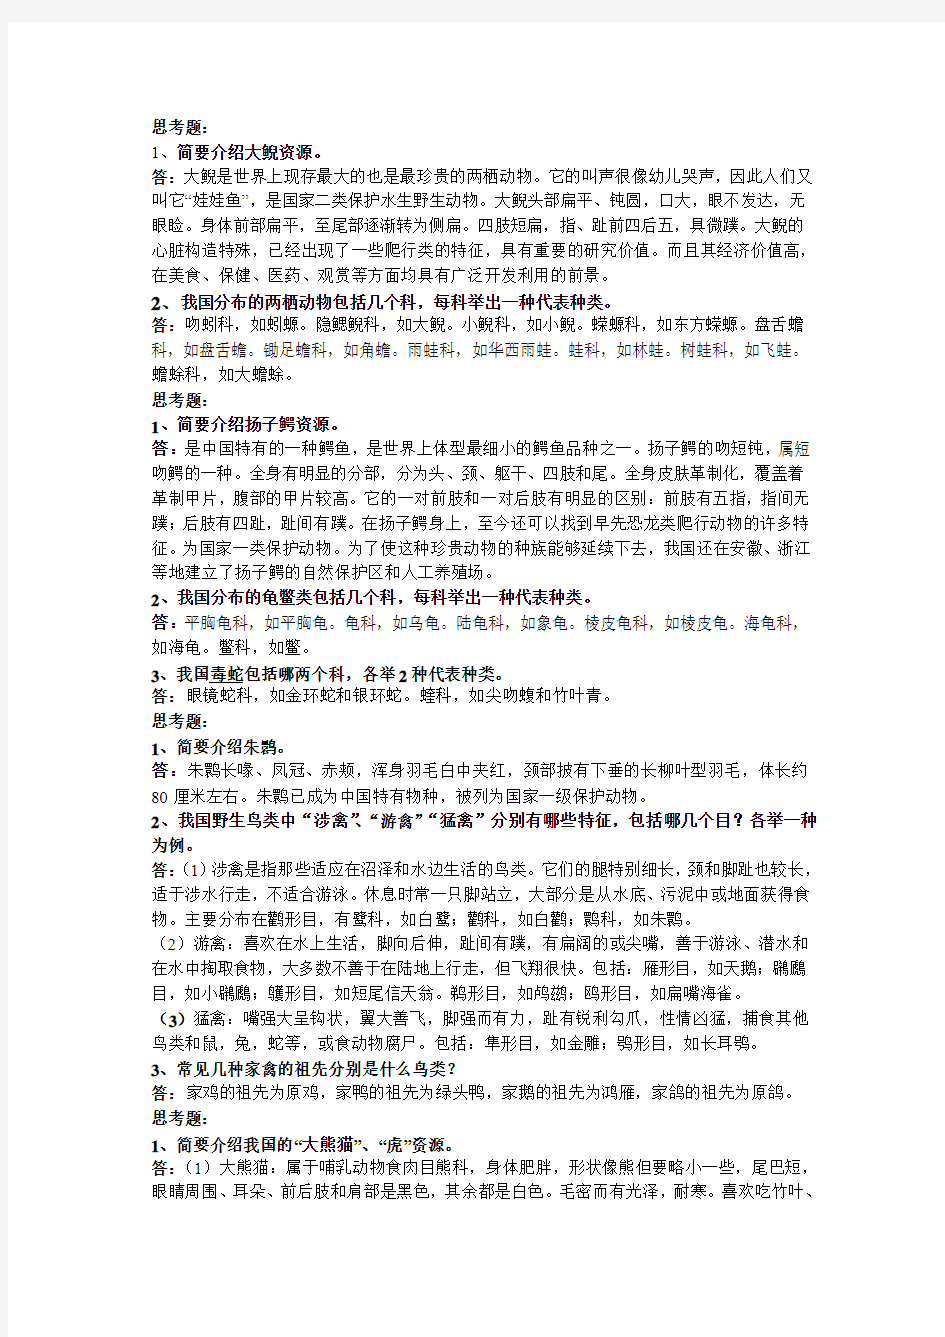 野生动物资源管理 考试笔记 南京林业大学 鲁长虎